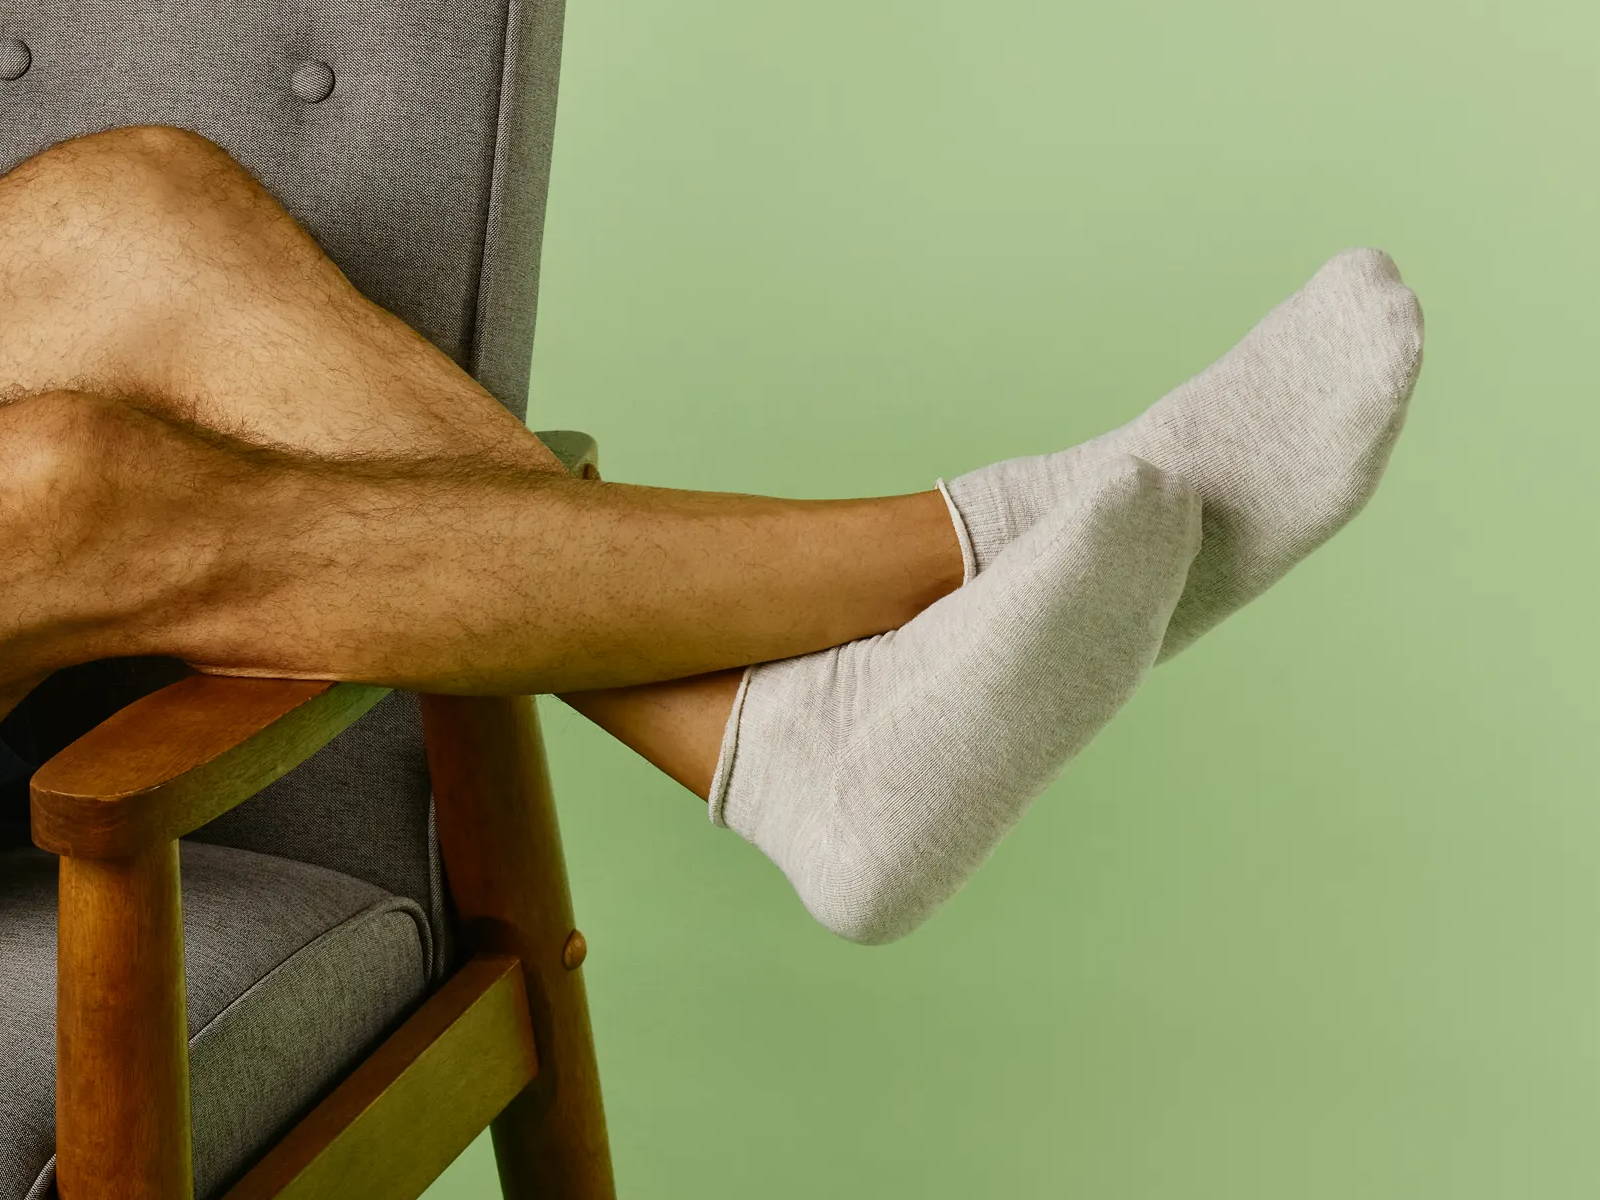 https://shopthuasne.com/arthritis-and-seamless-socks